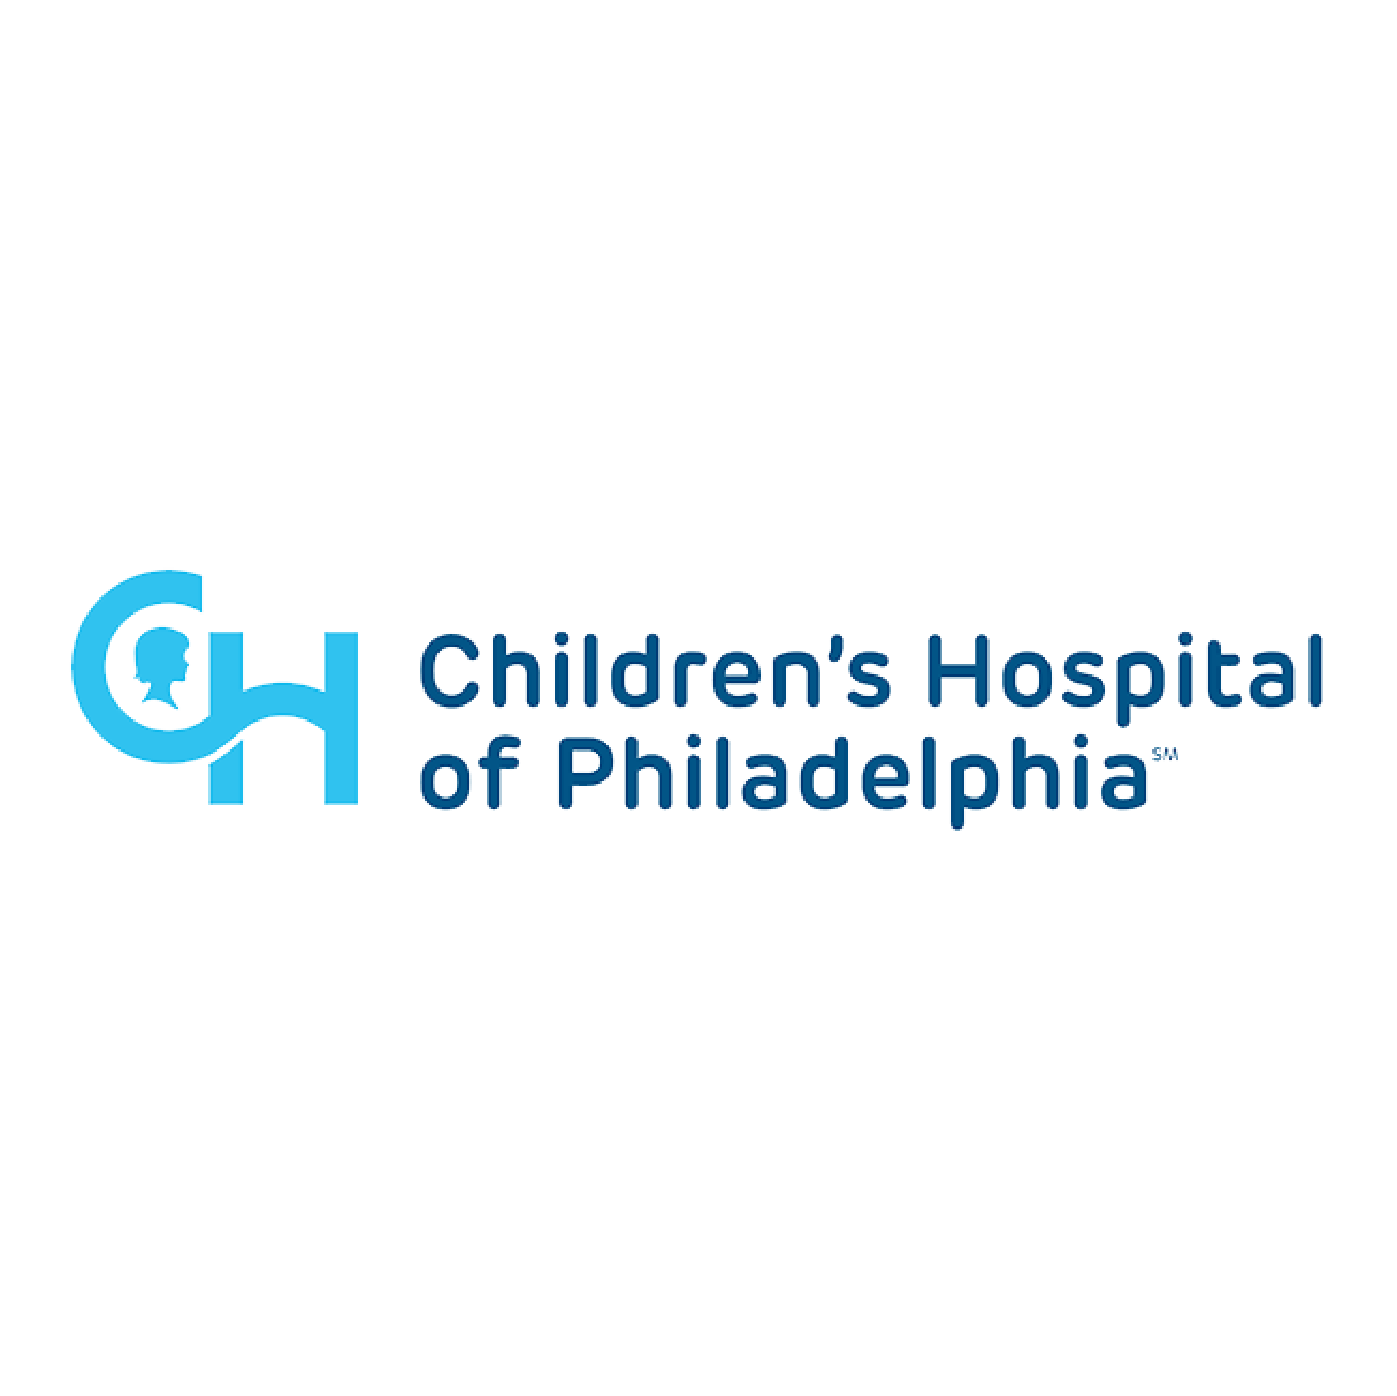 Children's Hospital of Philadelphia Logo